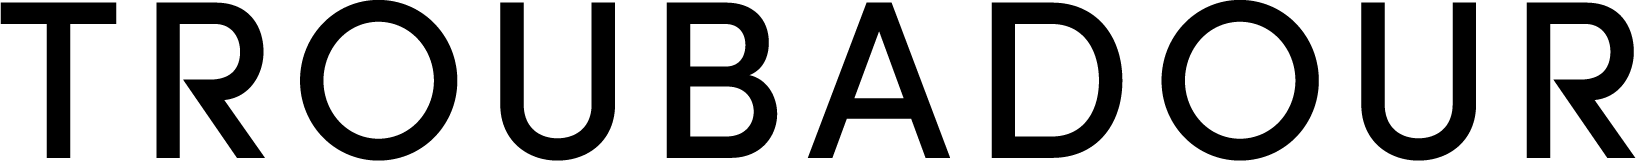 logo of Troubadour